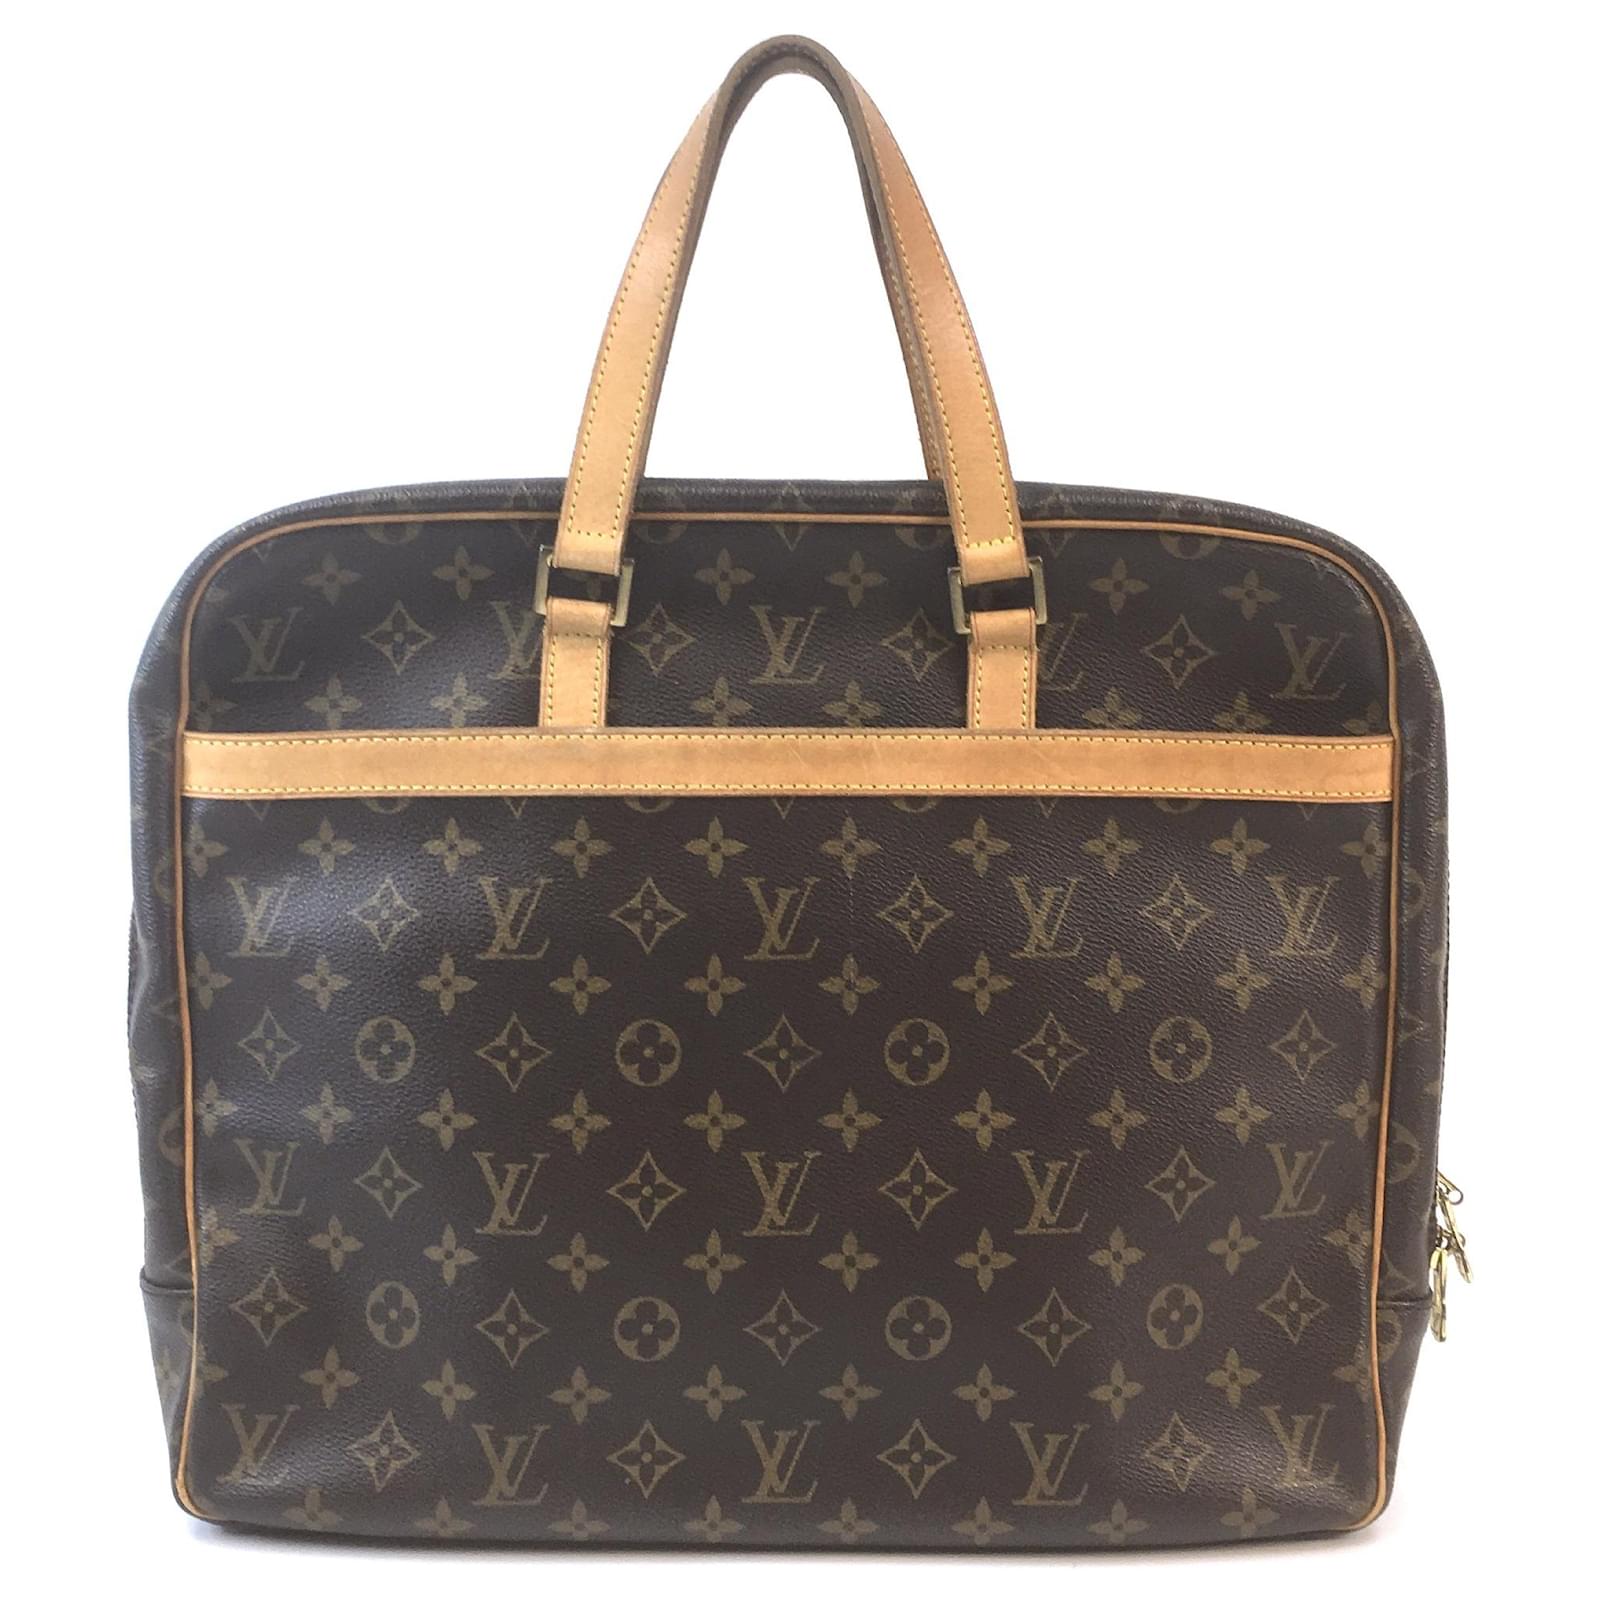 Louis Vuitton, Bags, Authentic Louis Vuitton Laptop Bag